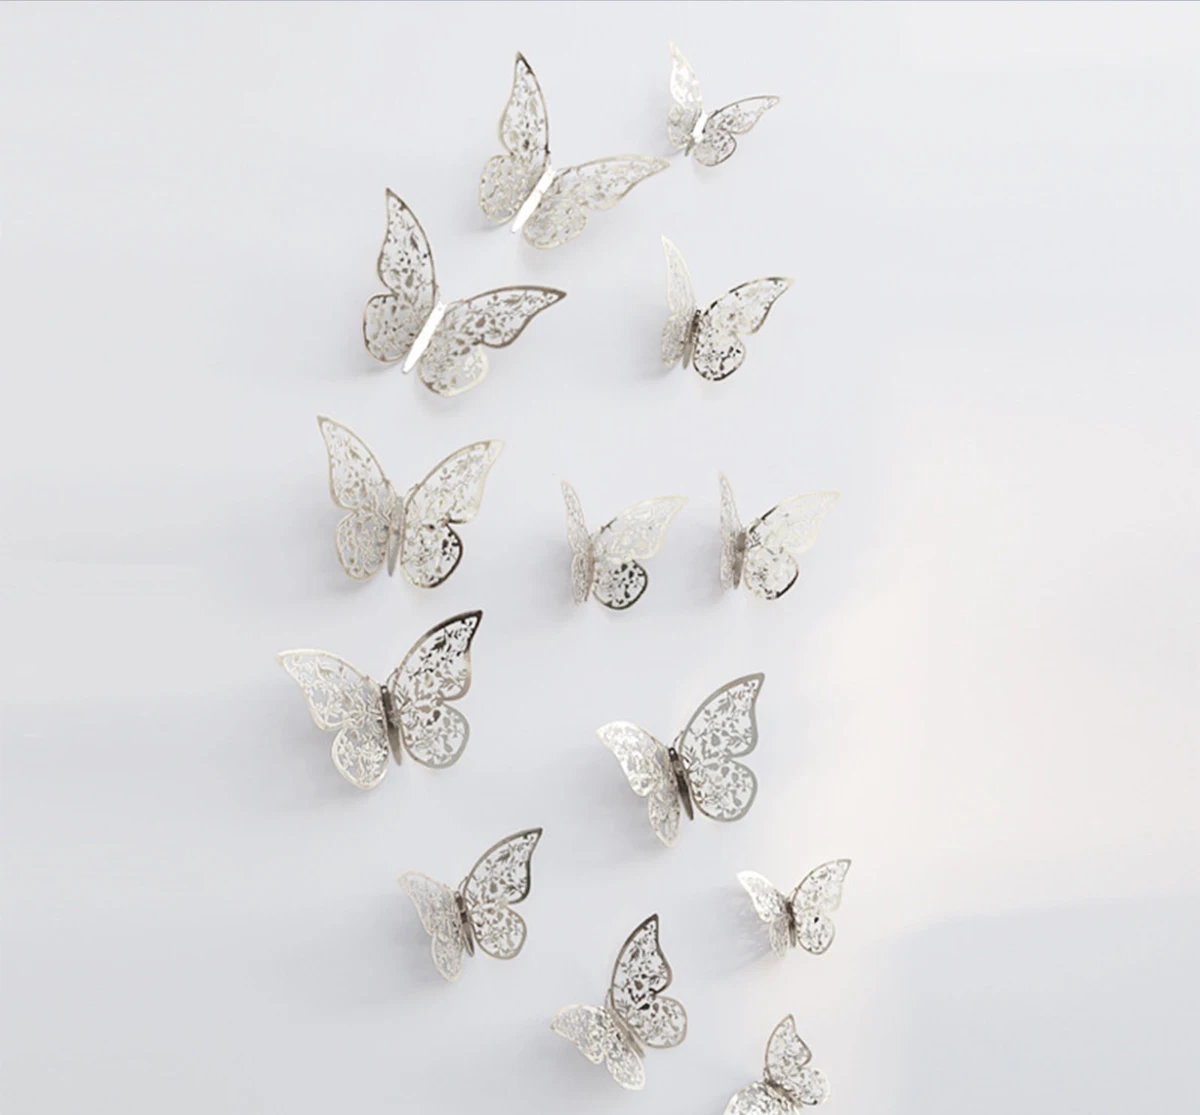 12 шт./компл. 3D настенные стикеры бабочки полые Бумага; 3 размера; Цвет серебристый, золотой для наклейки на холодильник домашний вечерние свадебный Декор